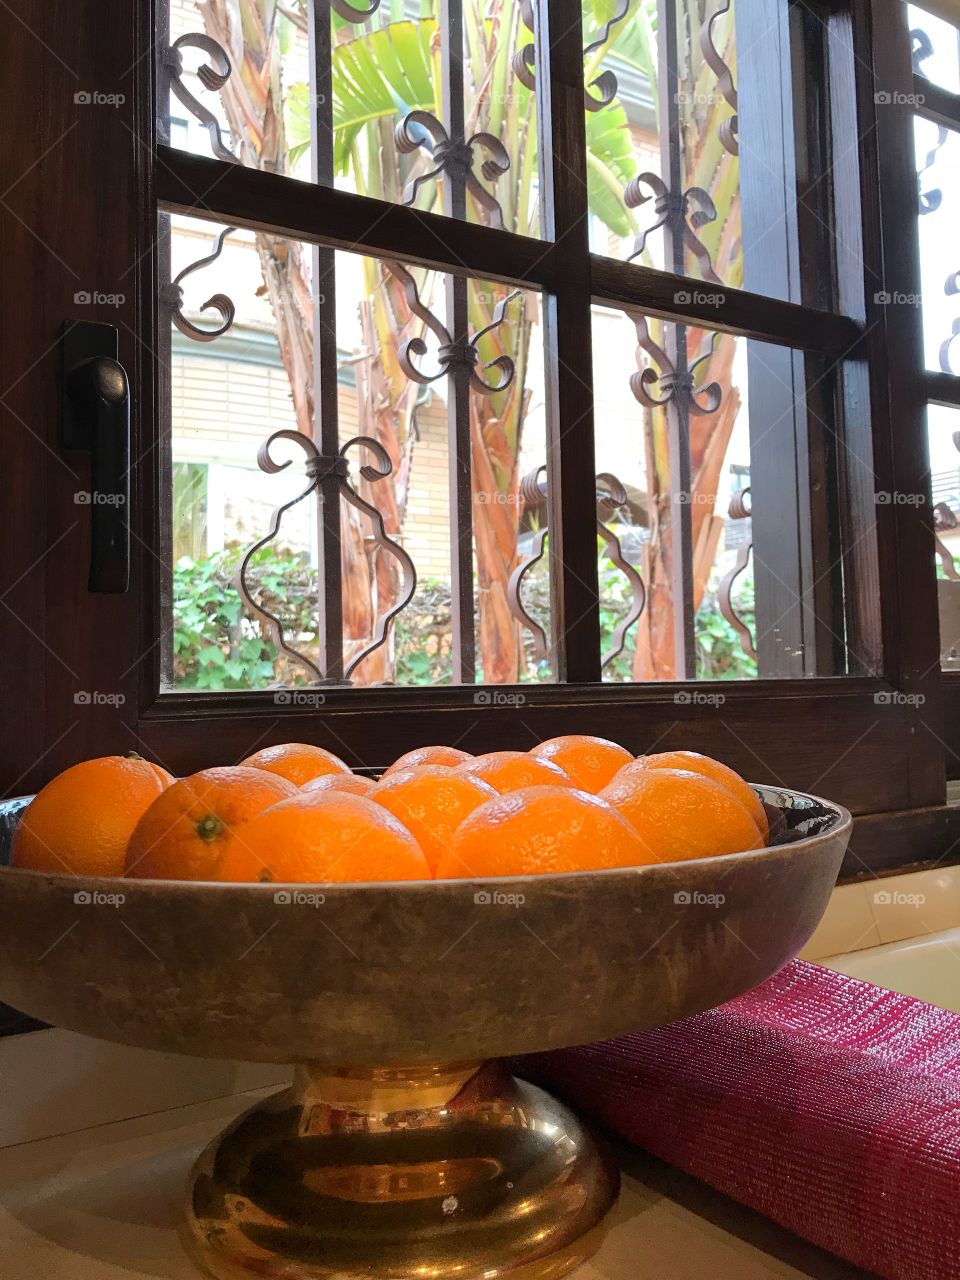 Oranges in the windows 